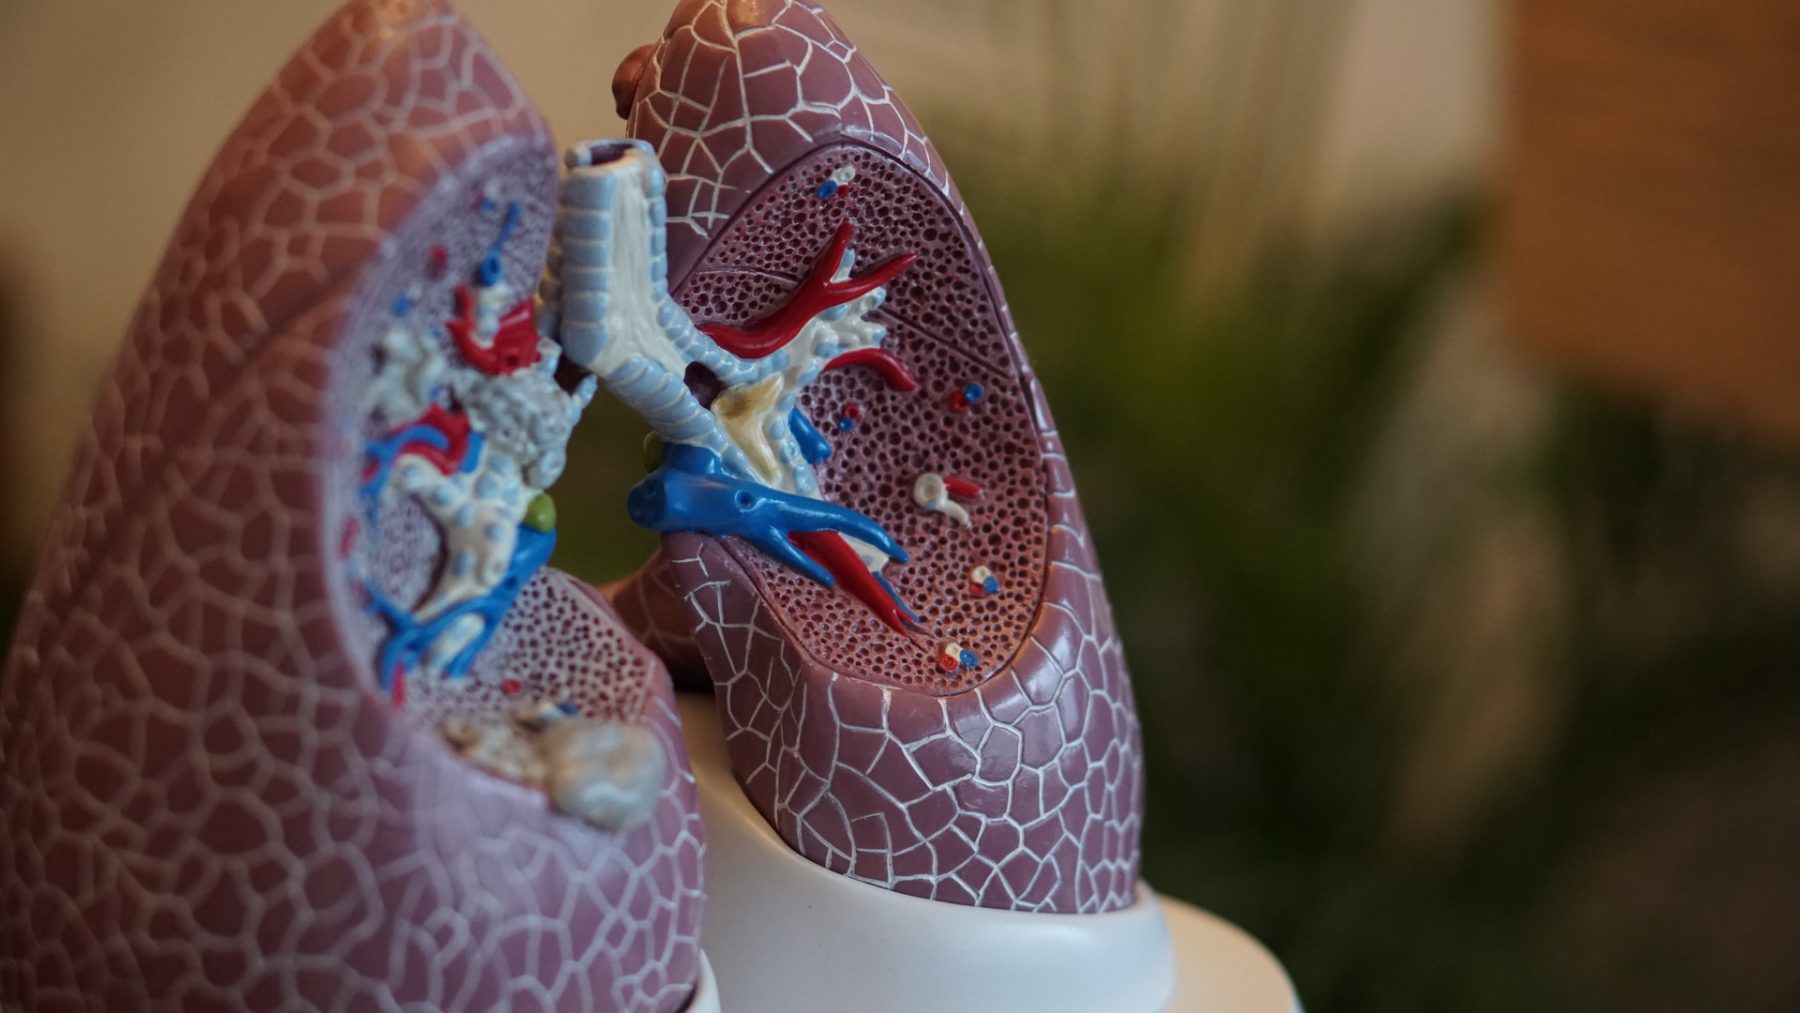 Χρόνια Αποφρακτική Πνευμονοπάθεια: Νέα ψηφιακή λύση για ασθενείς με ΧΑΠ